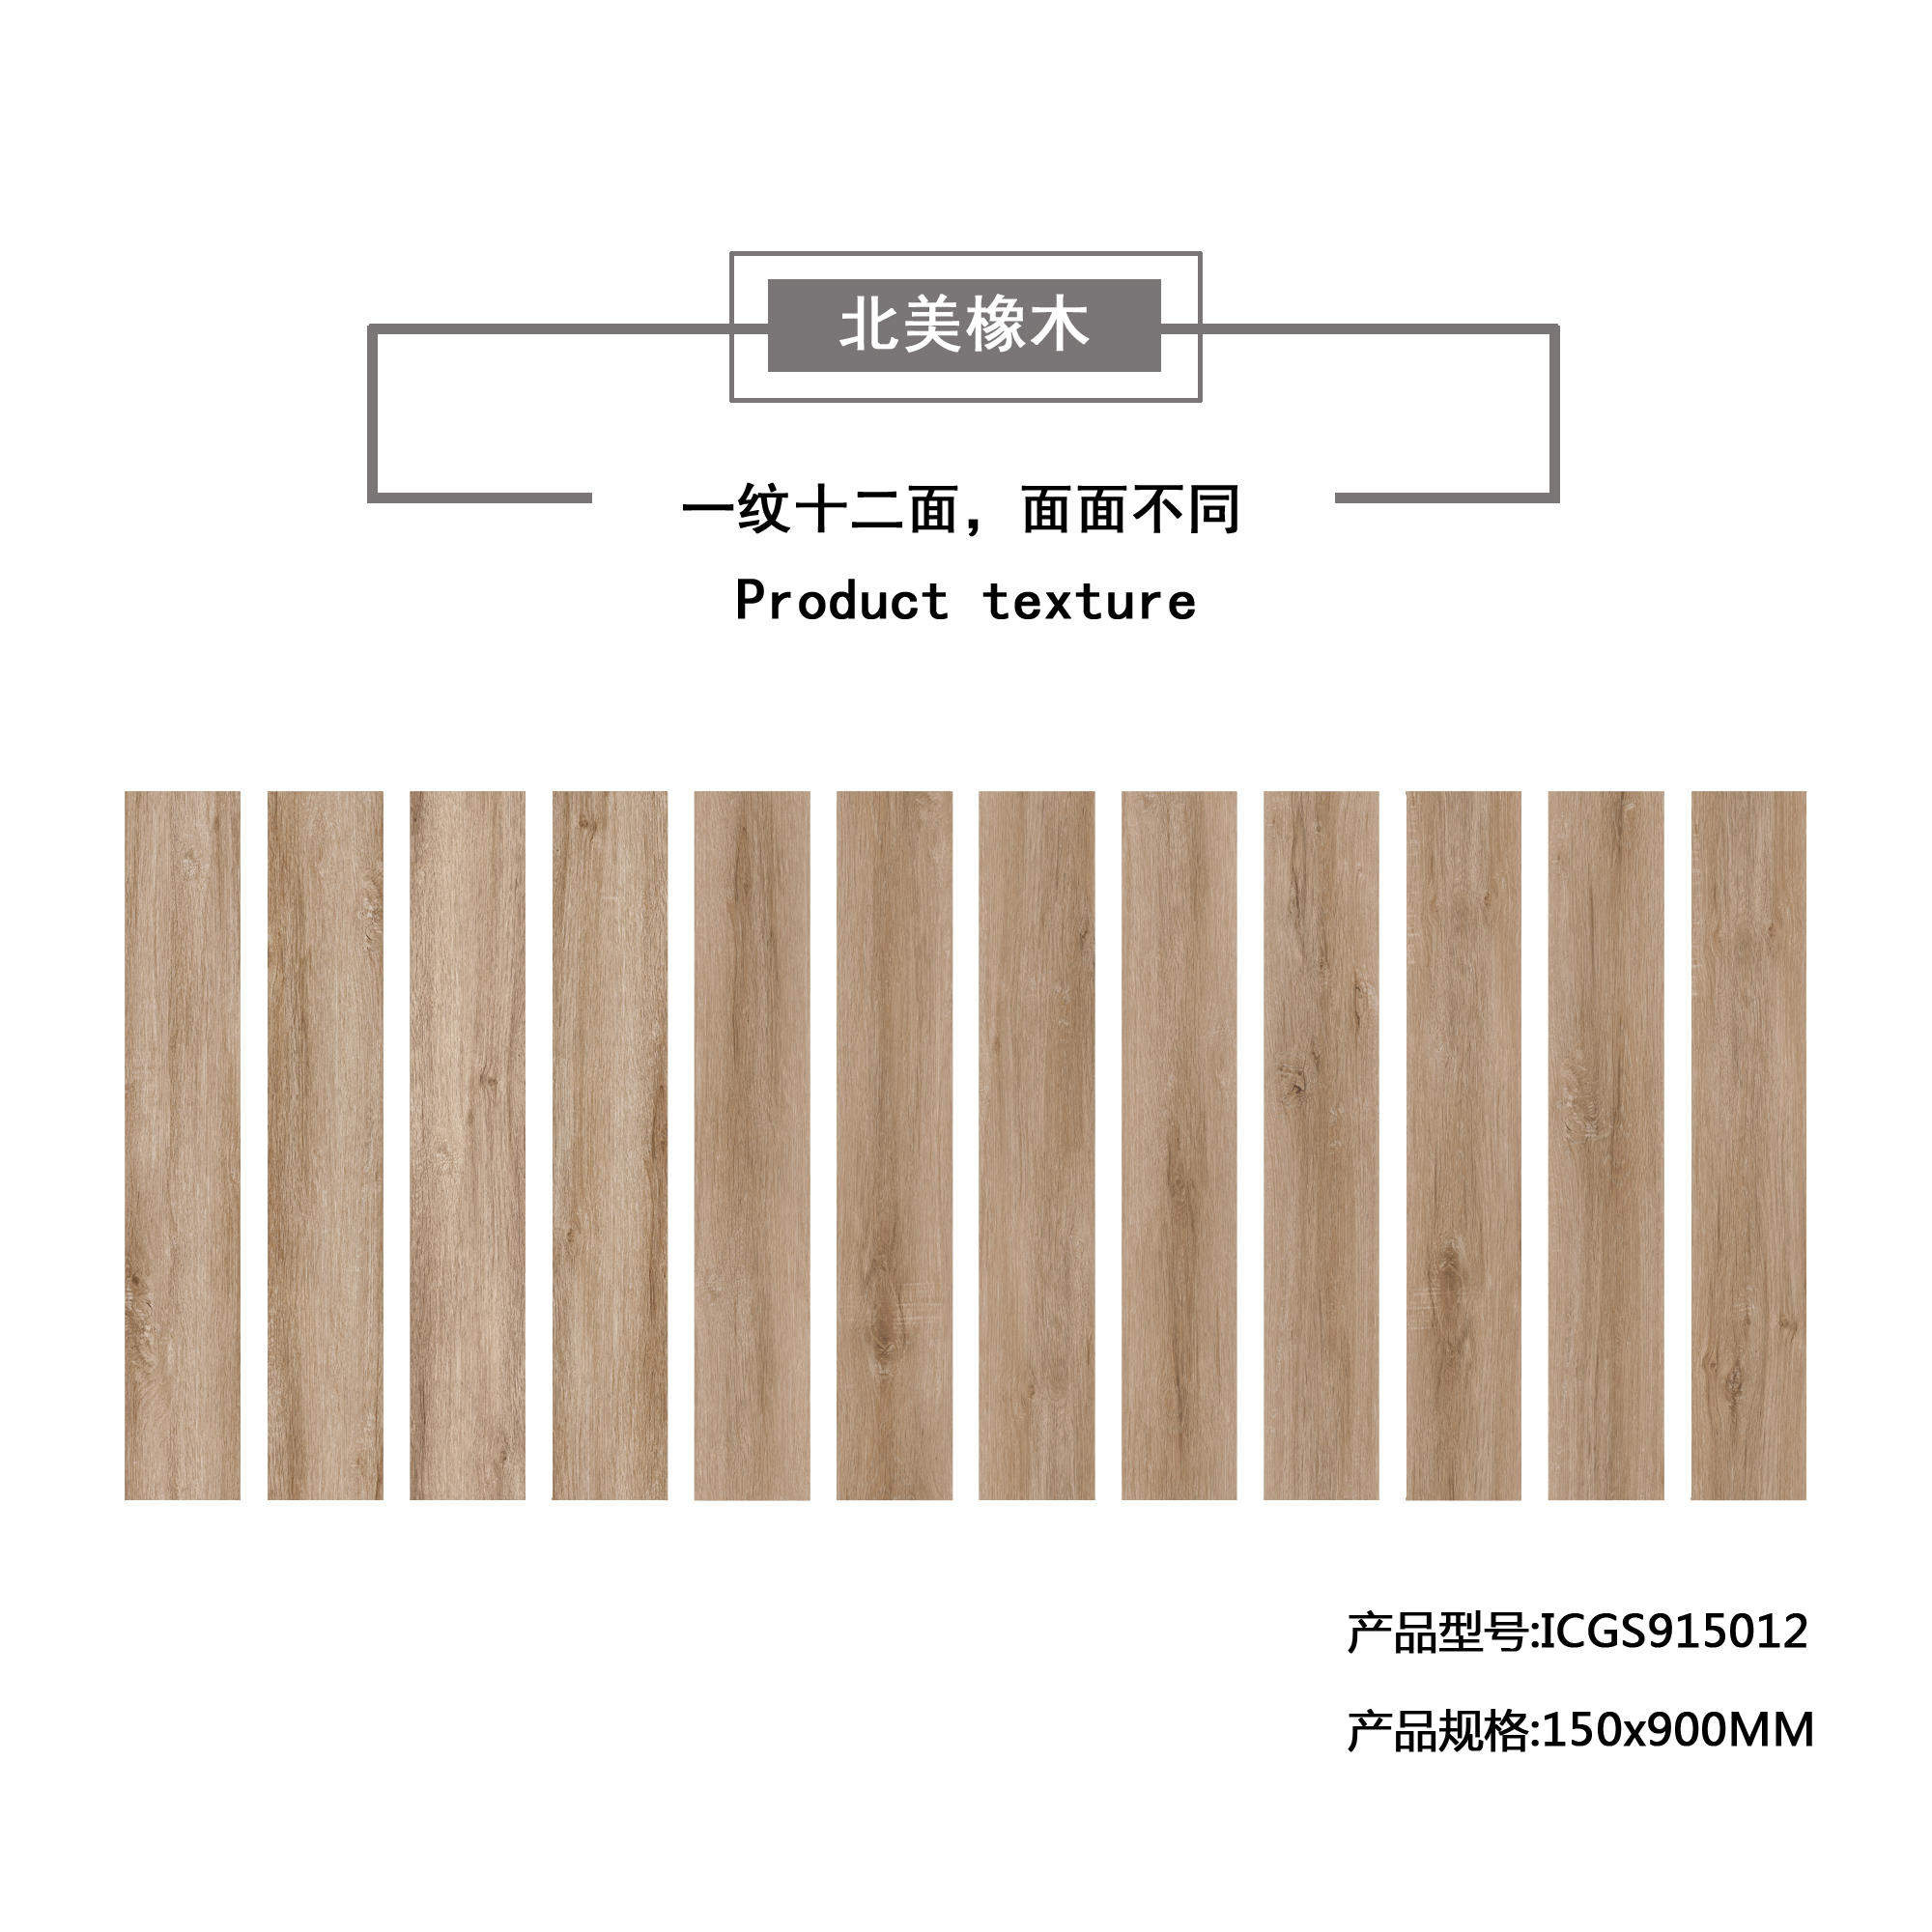 北美橡木（杏红）木纹地板砖ICGS915012产品混铺图